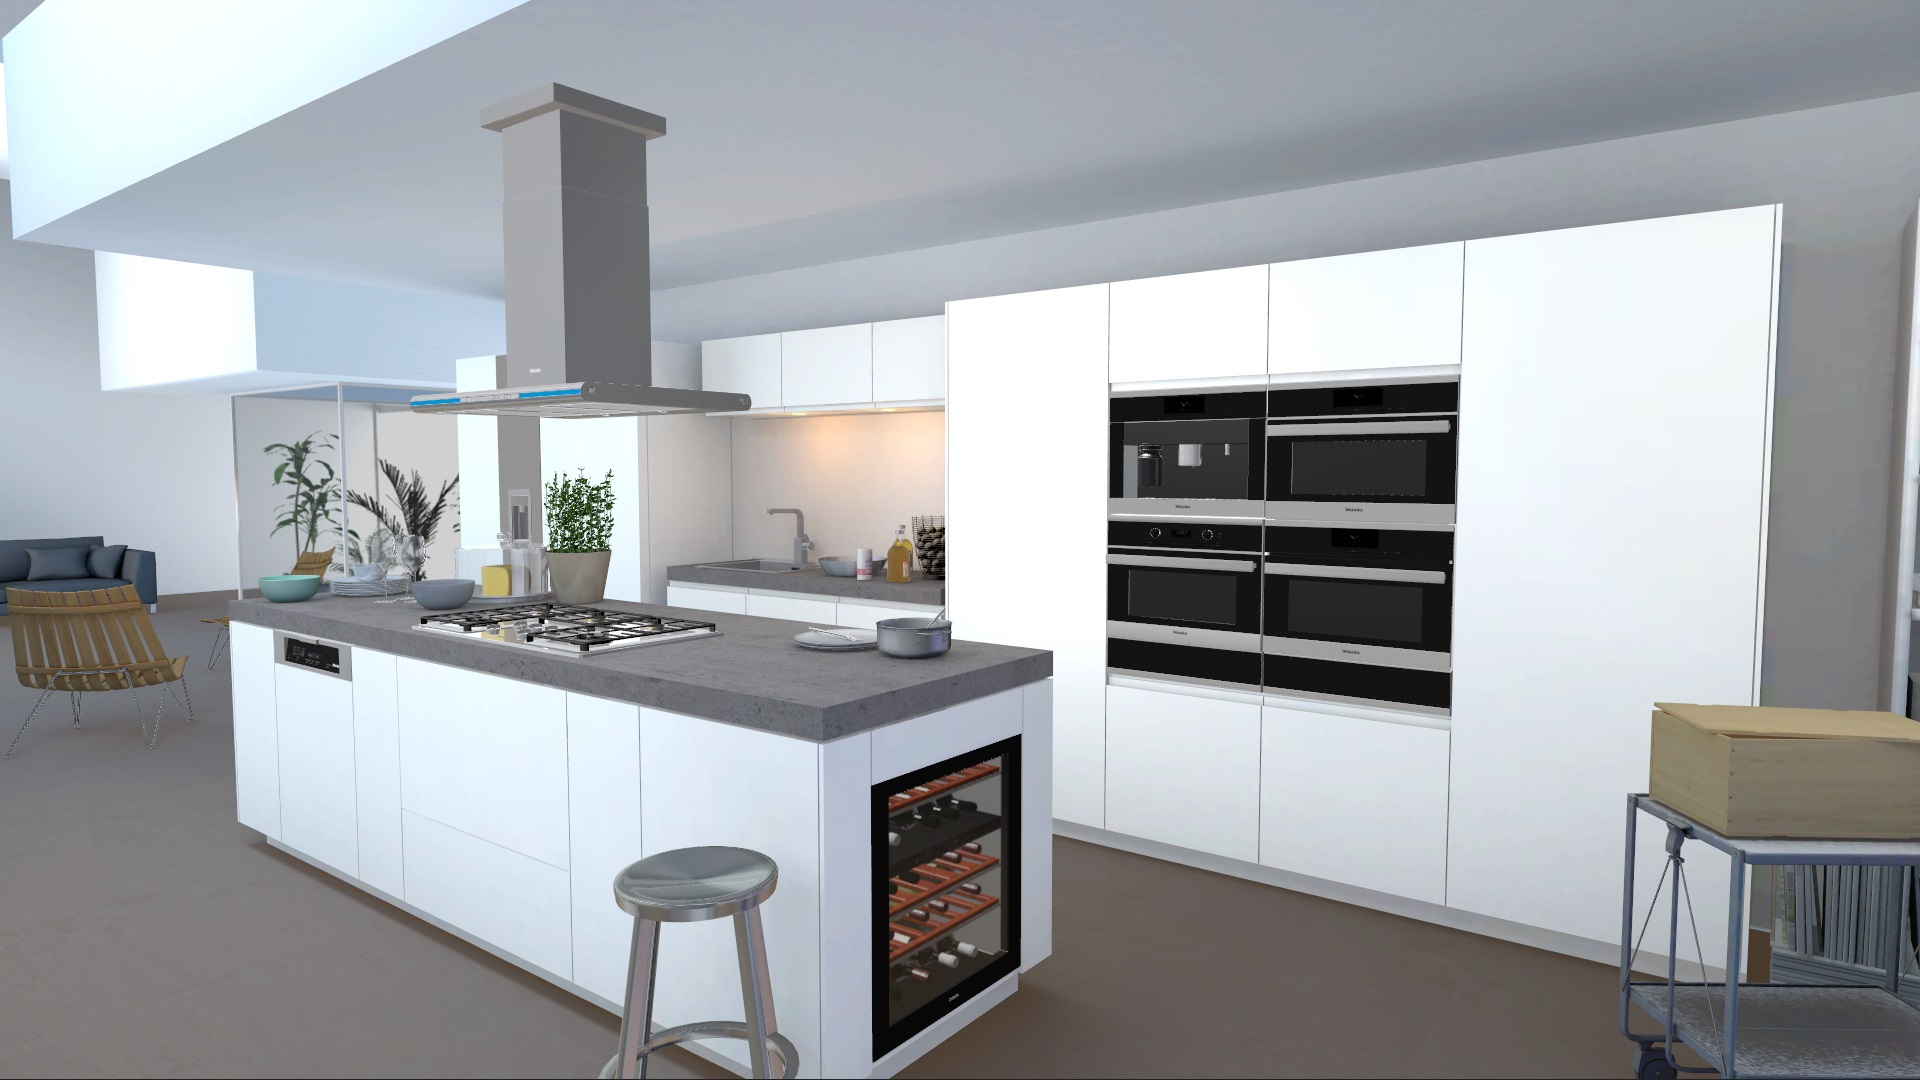 miele kitchen appliance visualizer von unity mit kuechenbeispiel